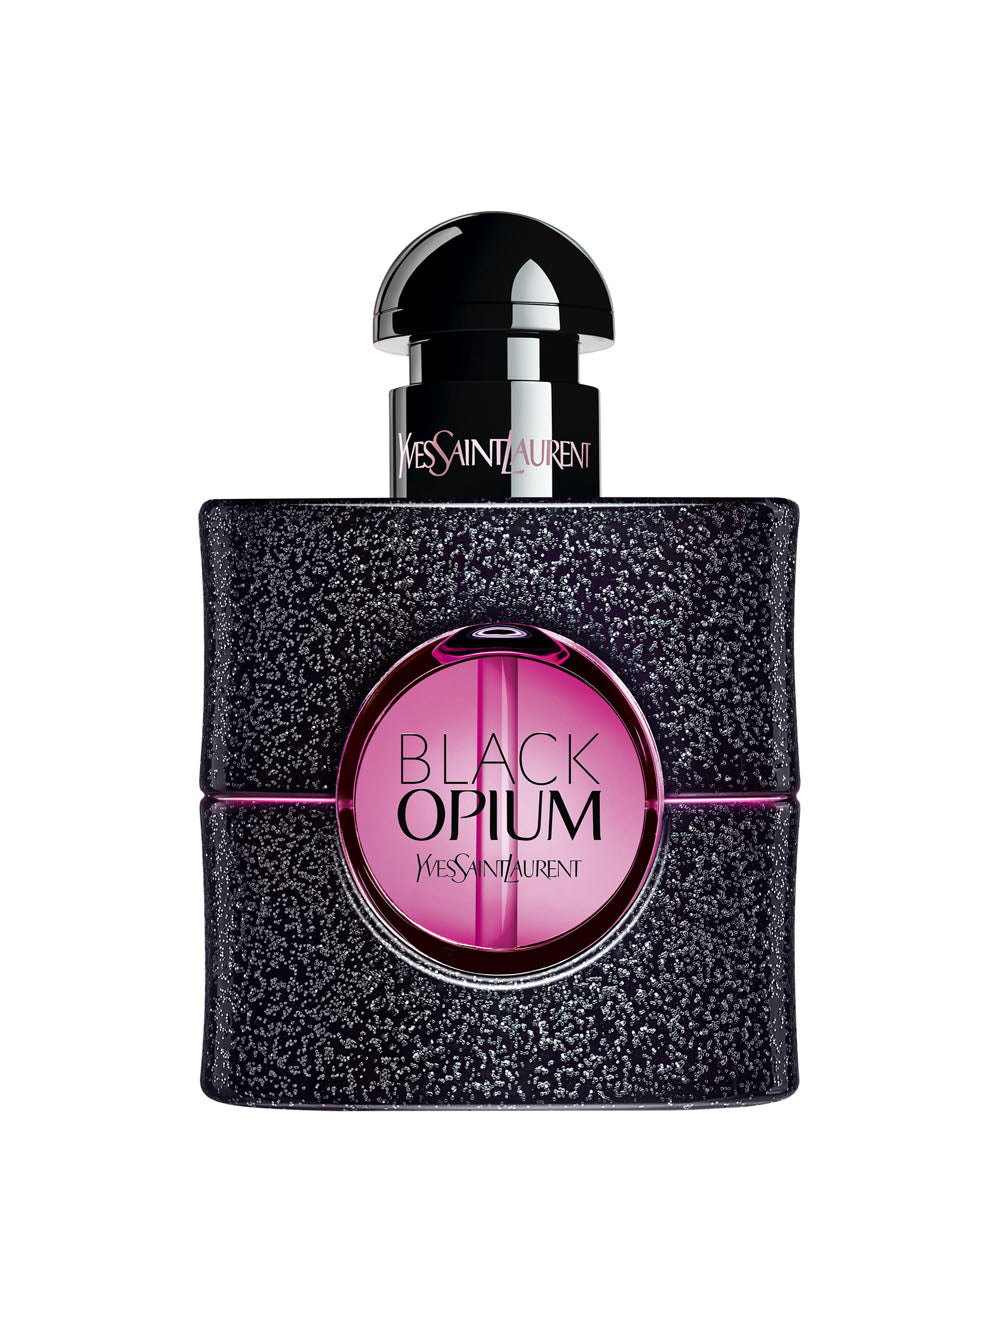 YVES SAINT LAURENT Black Opium Neon Eau de Parfum - 30ml